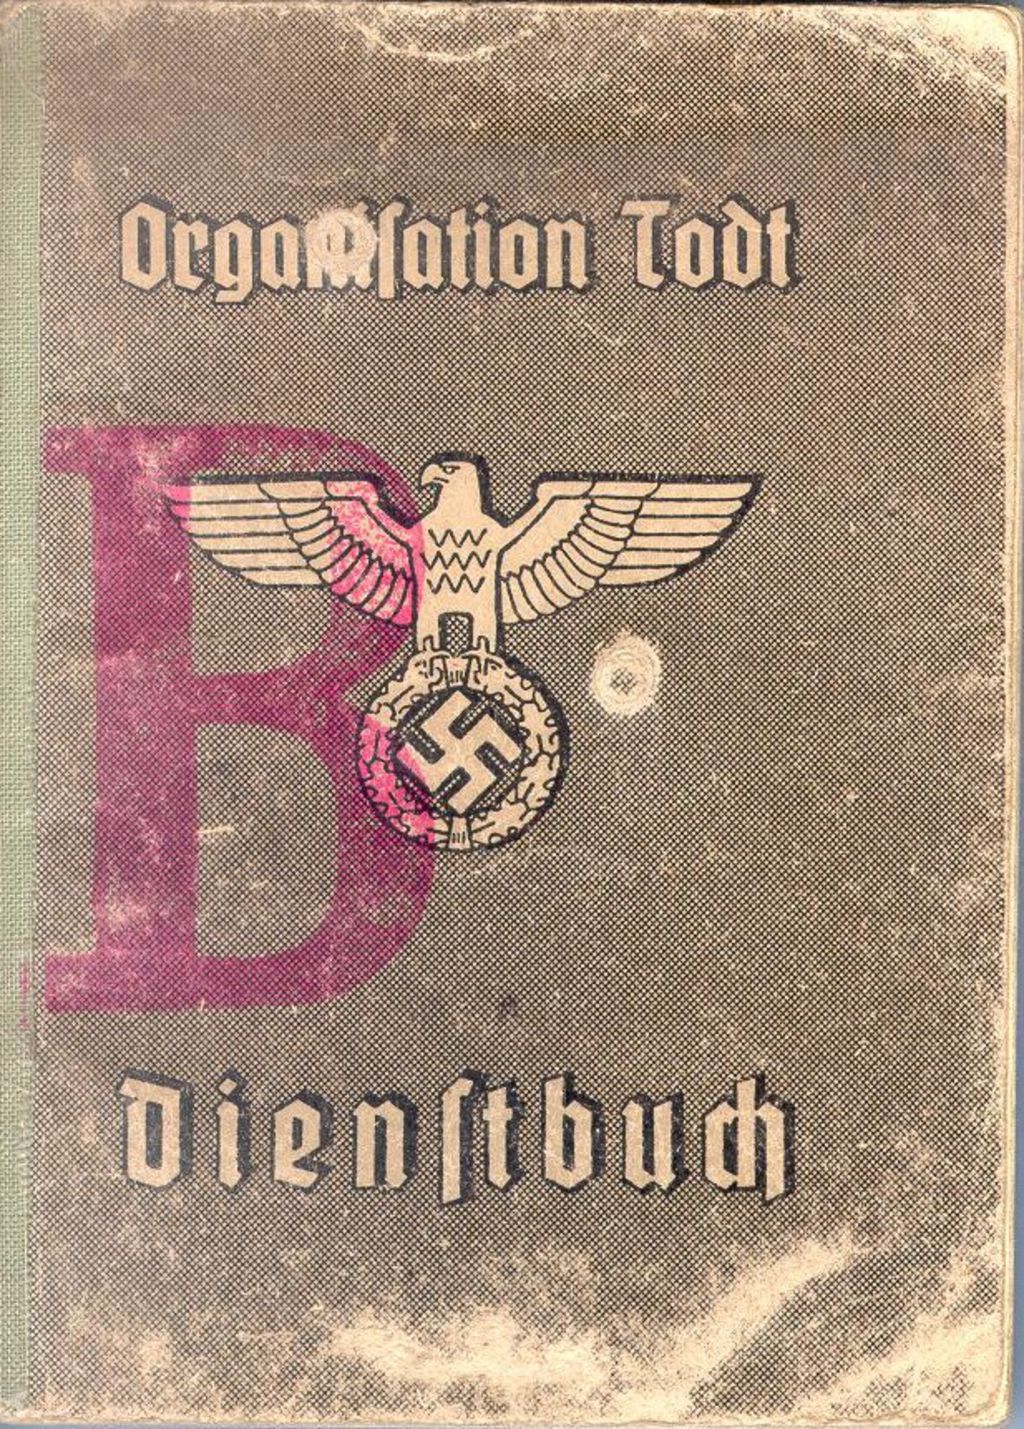 Exponat: Dienstbuch: Organisation Todt, 1944